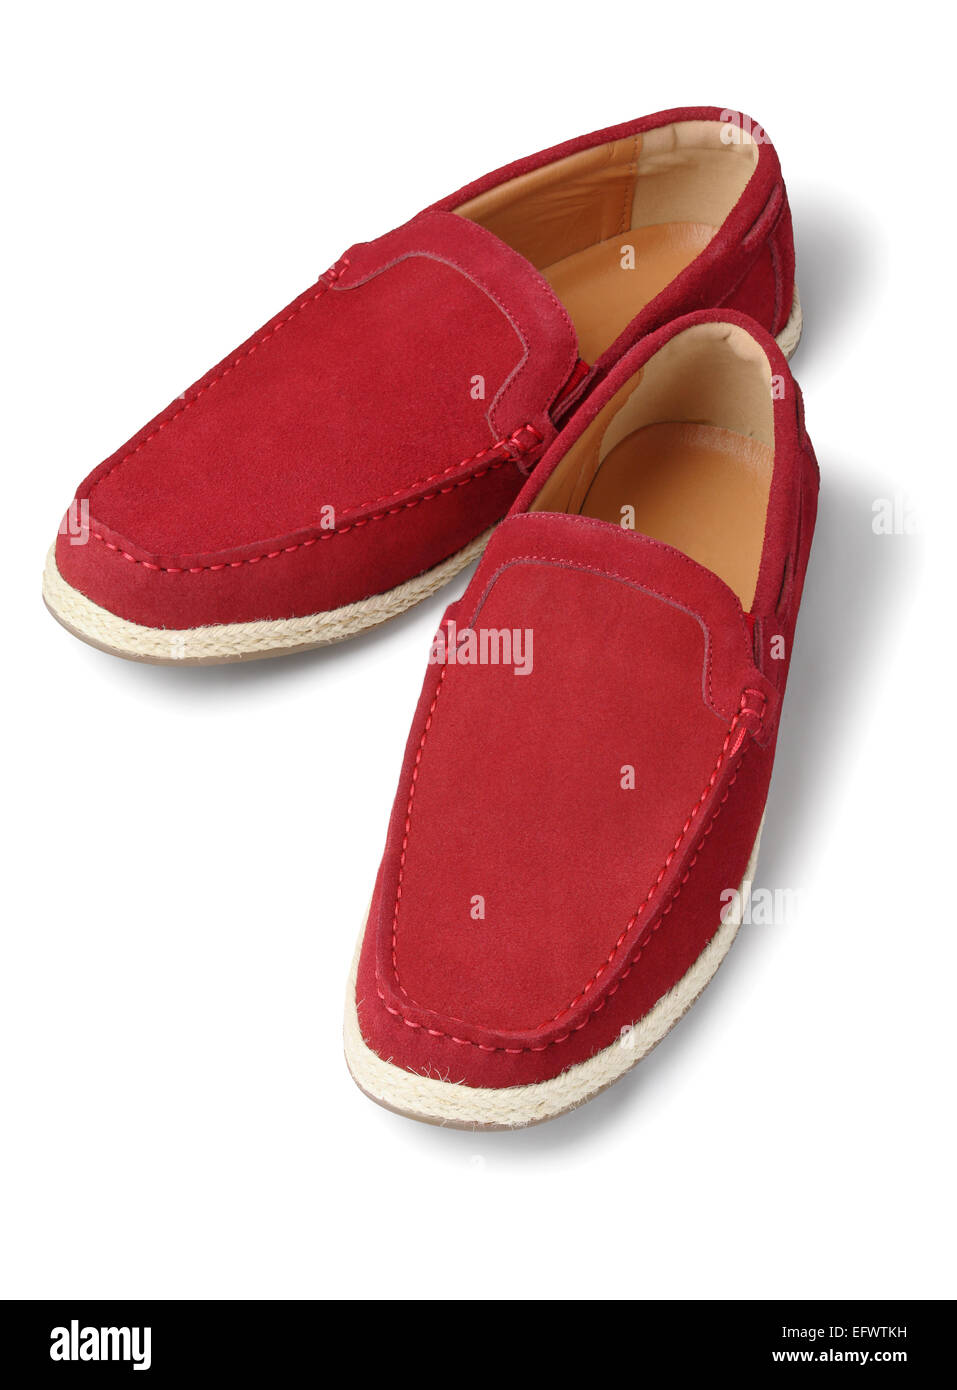 Chaussures en cuir occasionnels rouge sur fond blanc Banque D'Images